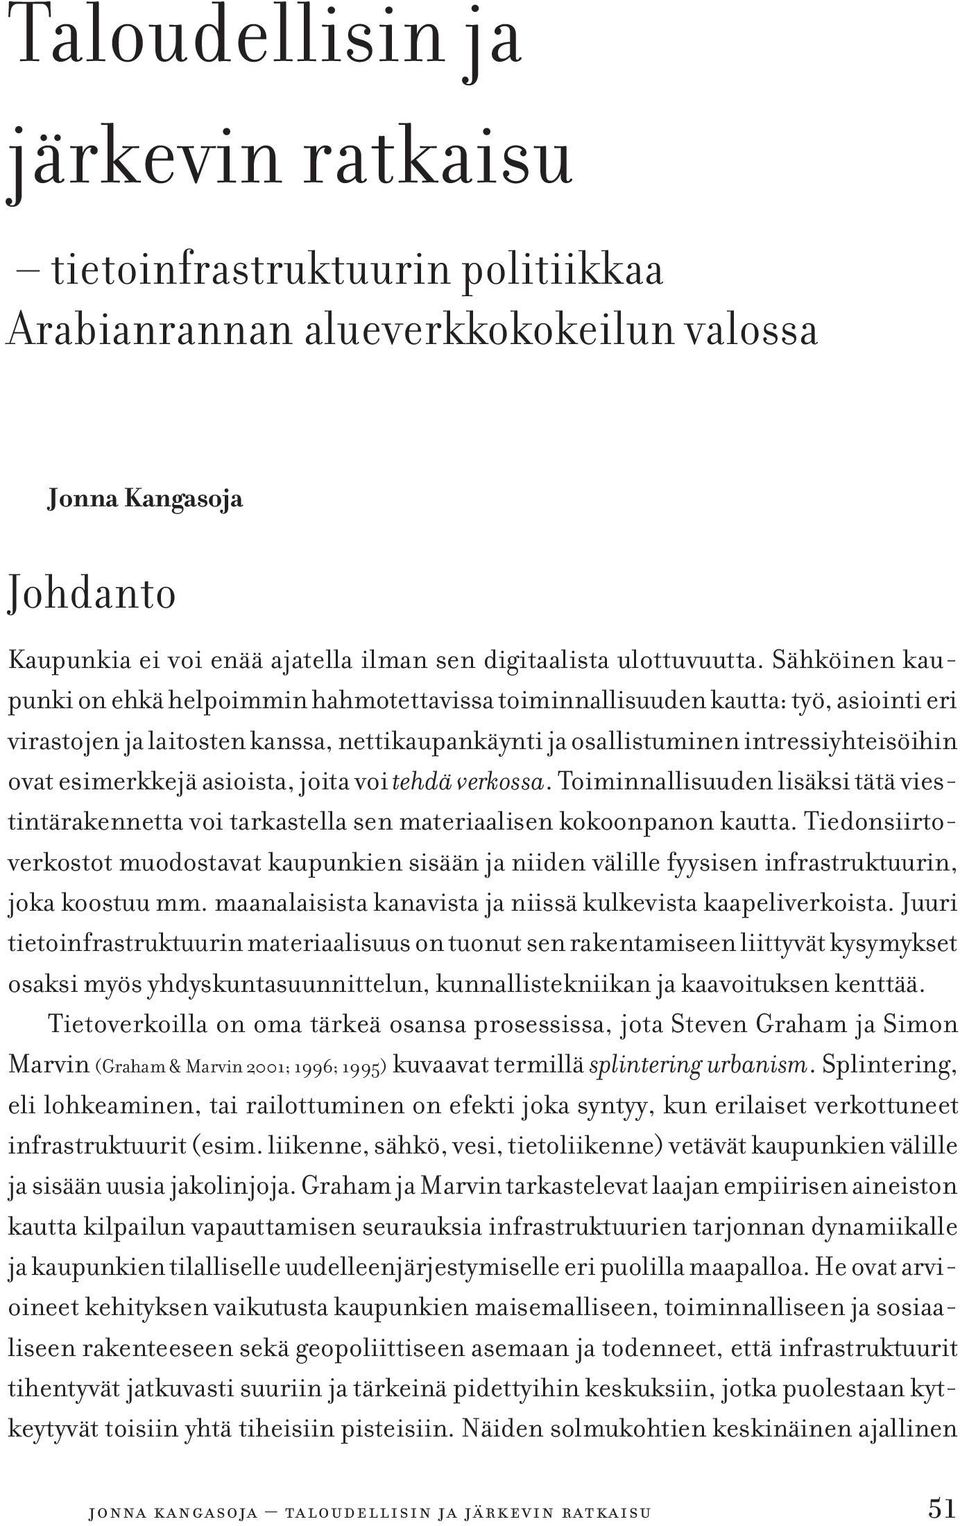 Ympäristön politisoituminen Tampereella vuosina 1959 1995. Tampere University Press, Tampere. Leskinen, Väinö (1967). Asevelisosialismista kansanrintamaan. Politiikkaa kolmella kymmenluvulla.